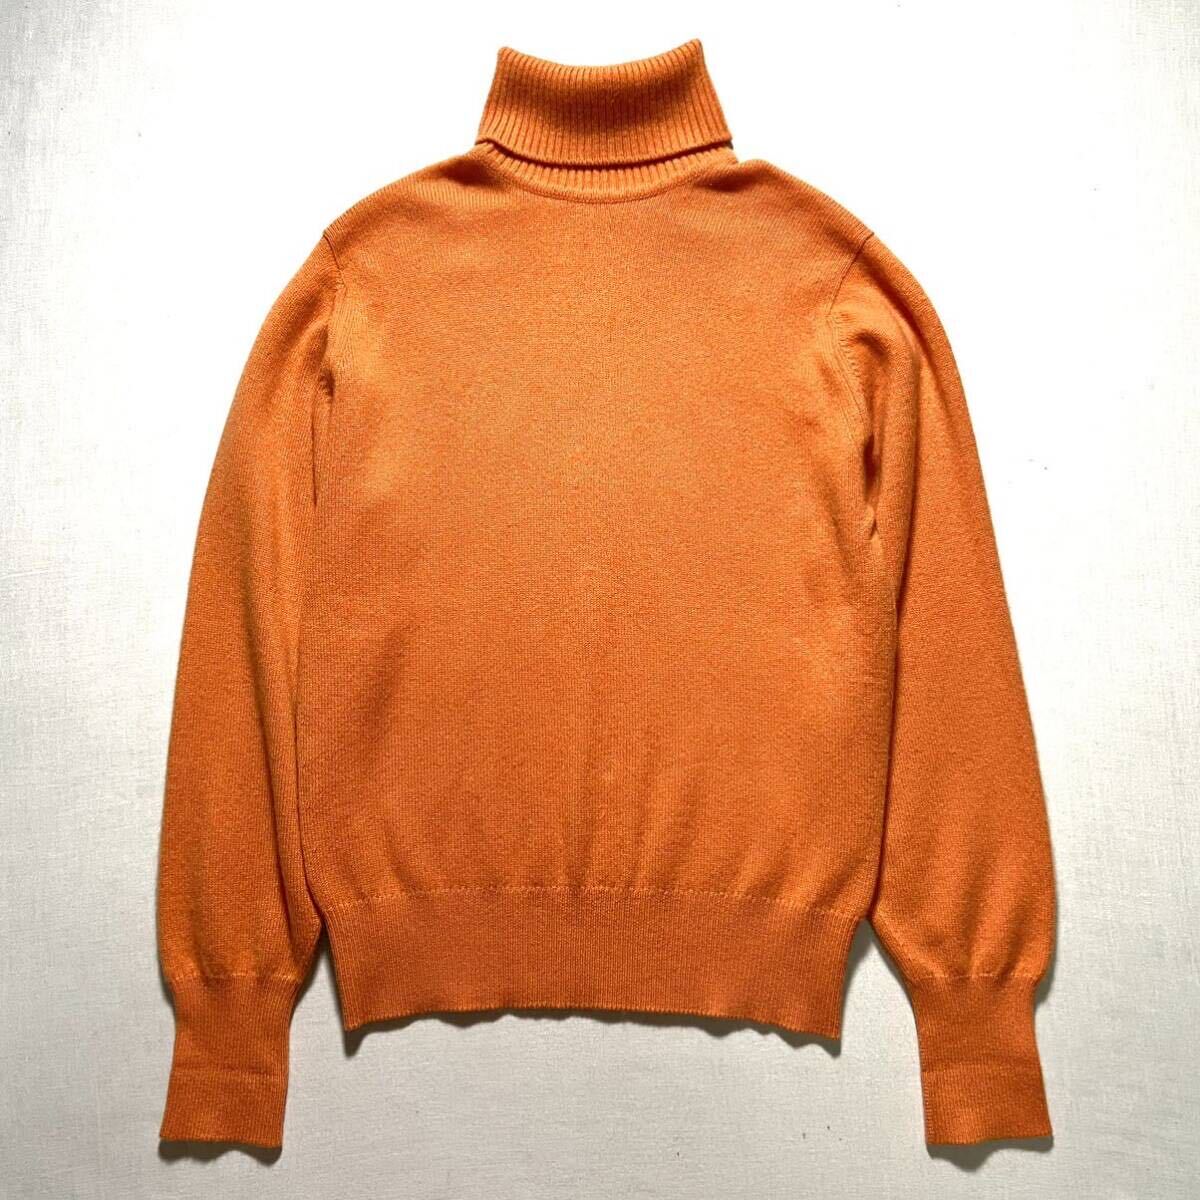  кашемир 100% HERMES Scotland производства вязаный свитер Hermes orange ta-toru шея высший класс 